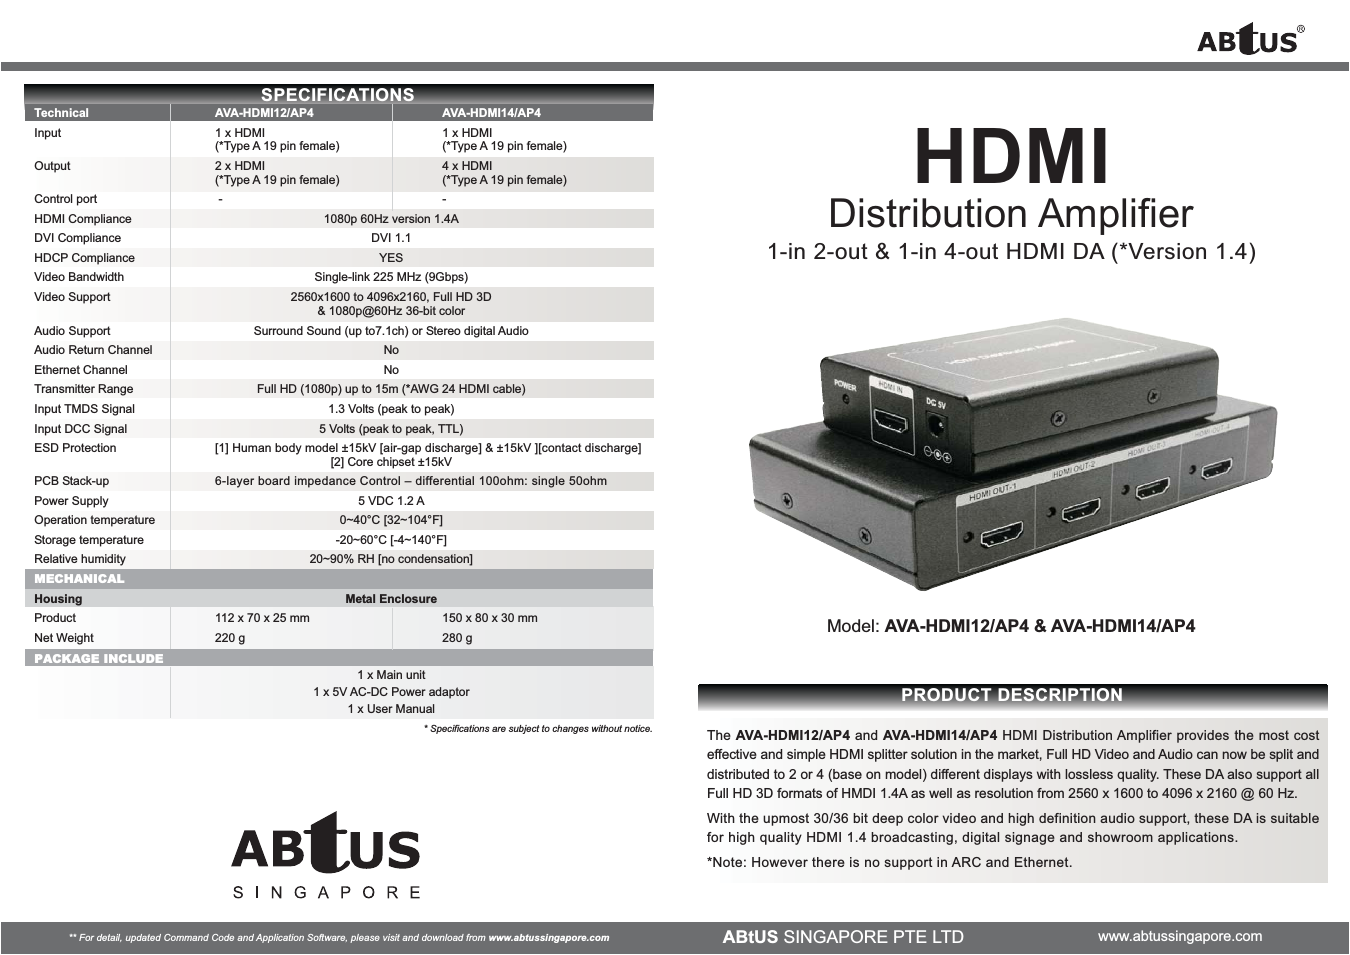 AVA-HDMI14/AP4